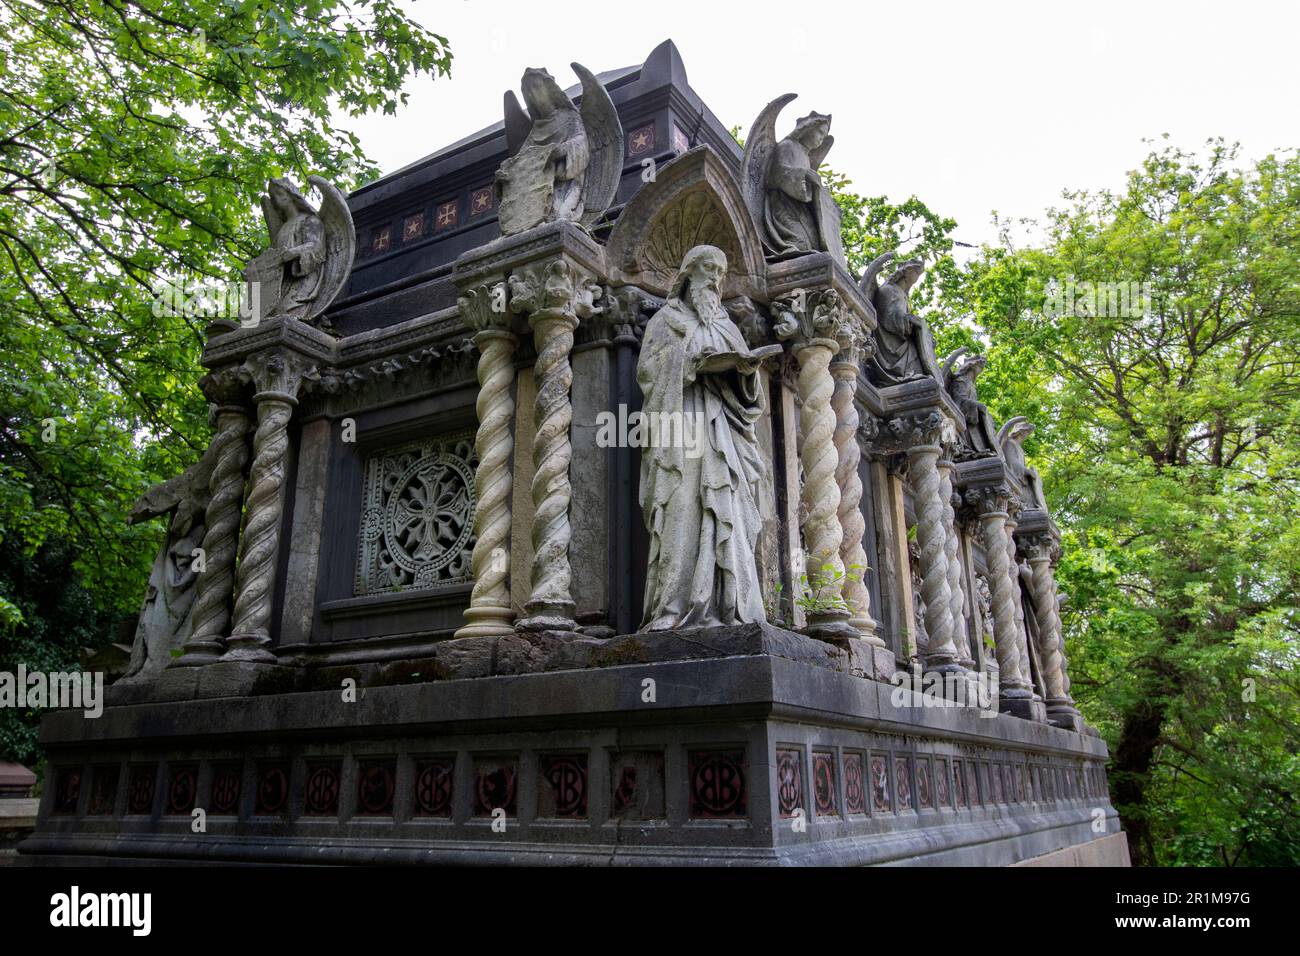 Il mausoleo di granito e calcare di Alexander Berens di E.M. BarryWest Norwood Cemetery, uno dei "magnifici sette" cimiteri di Londra, Regno Unito Foto Stock